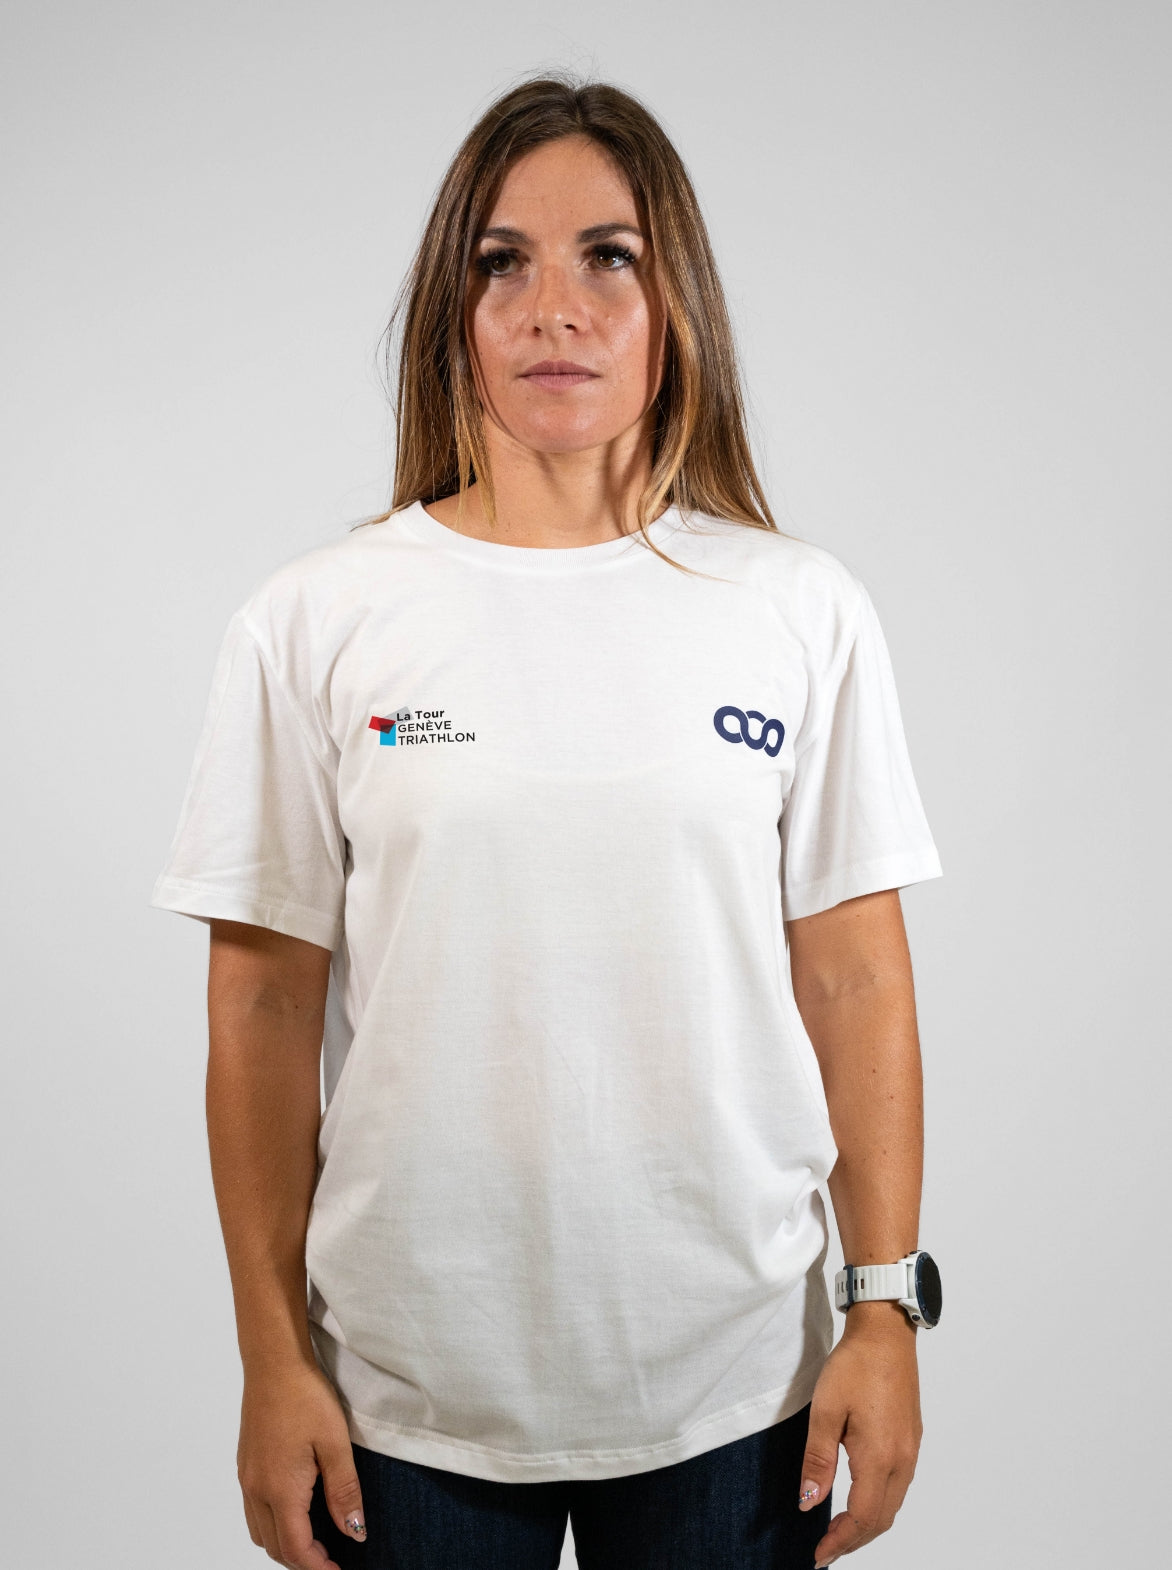 T-shirt coton Femme Made in France et Bio — La Tour Genève Triathlon